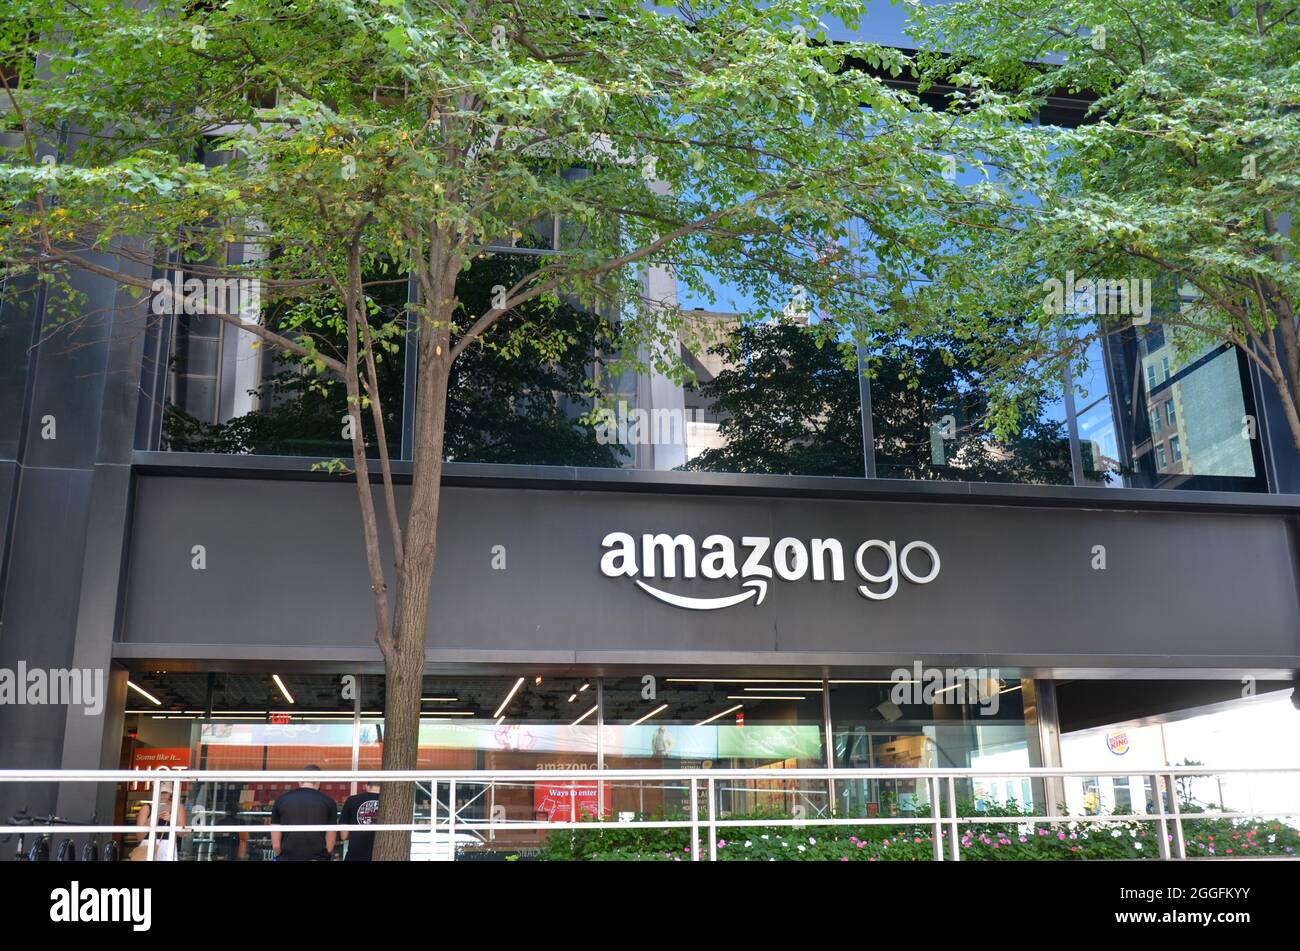 Amazon Go Store front. Stock Photo